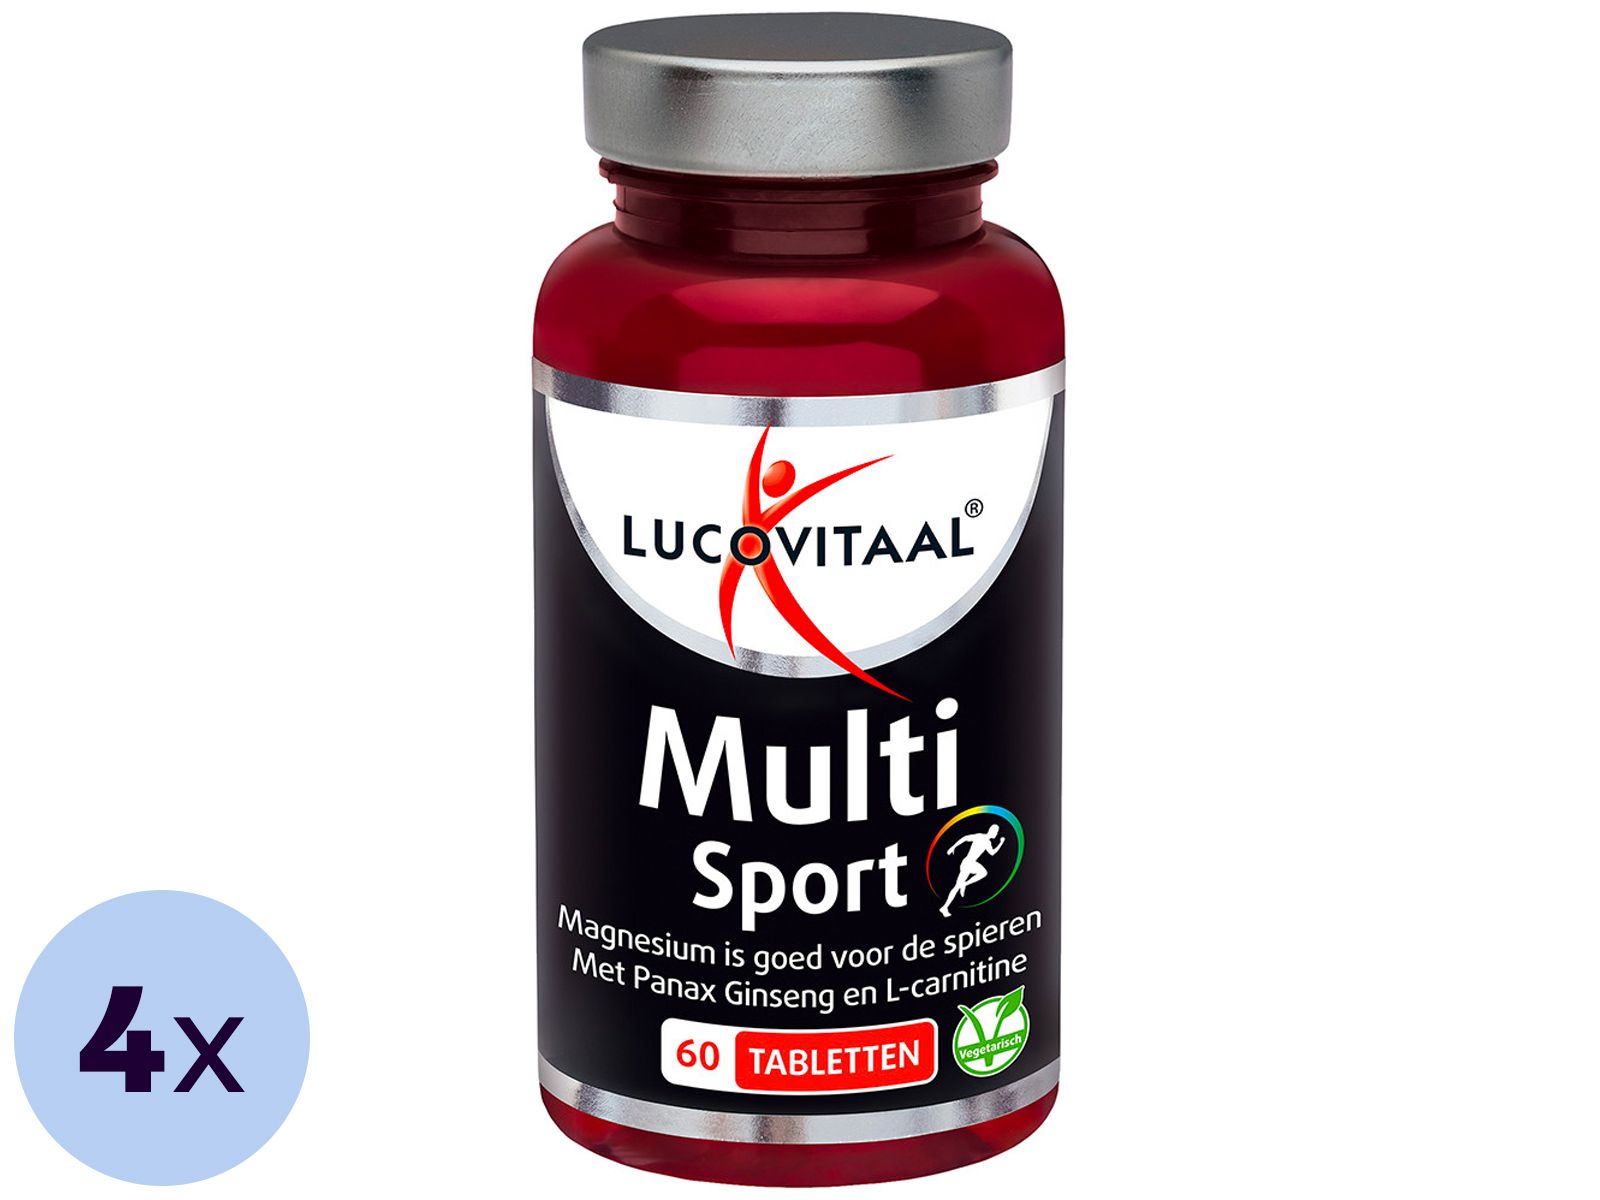 4x-60-tabletten-lucovitaal-multi-sport